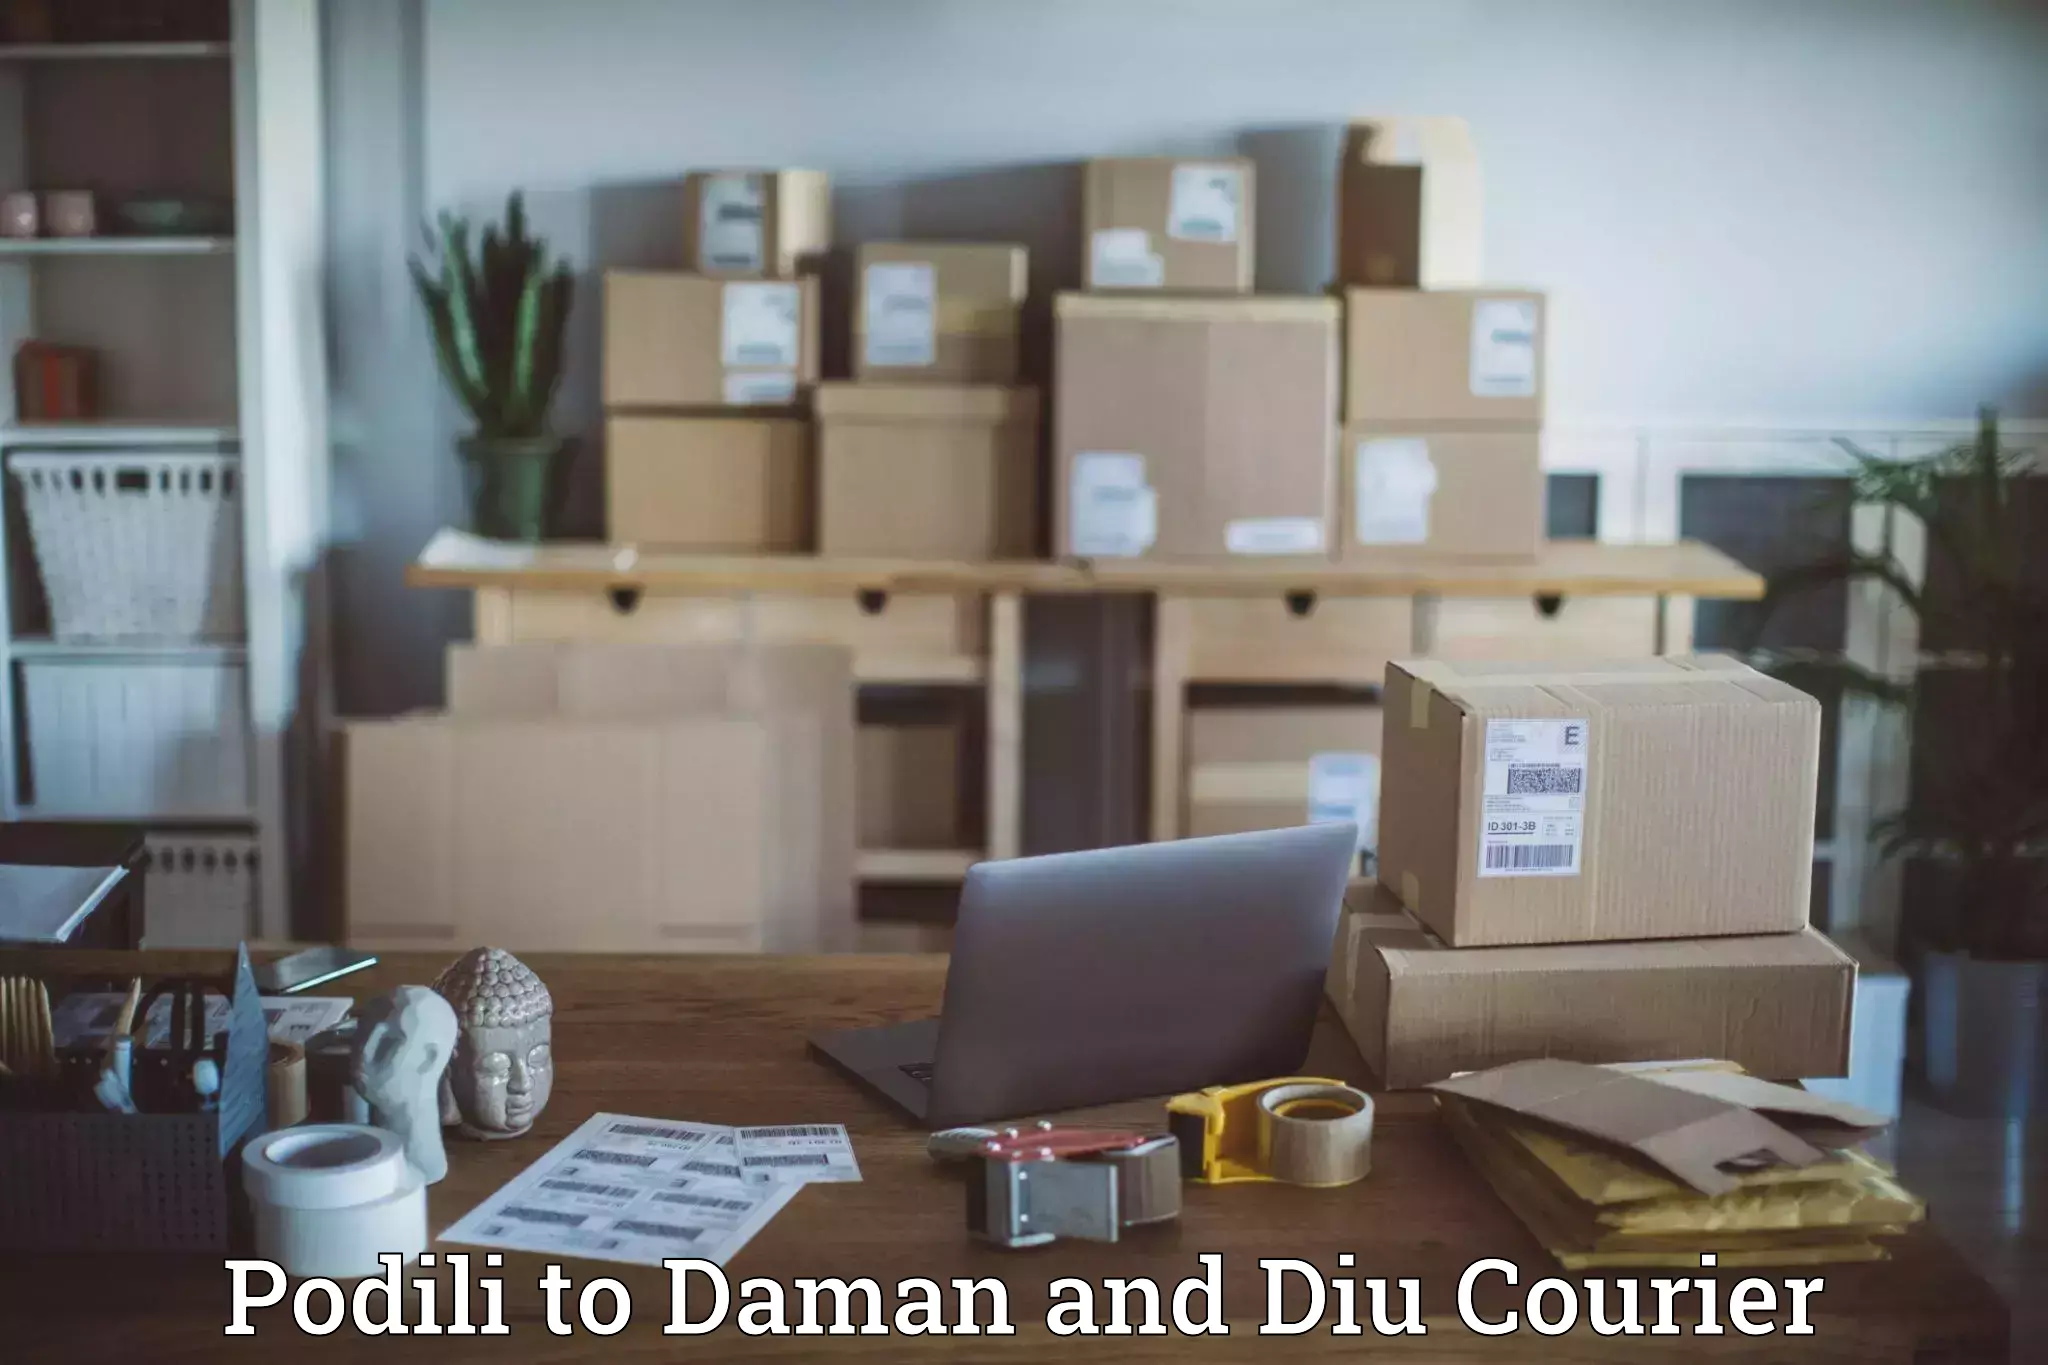 Logistics service provider Podili to Daman